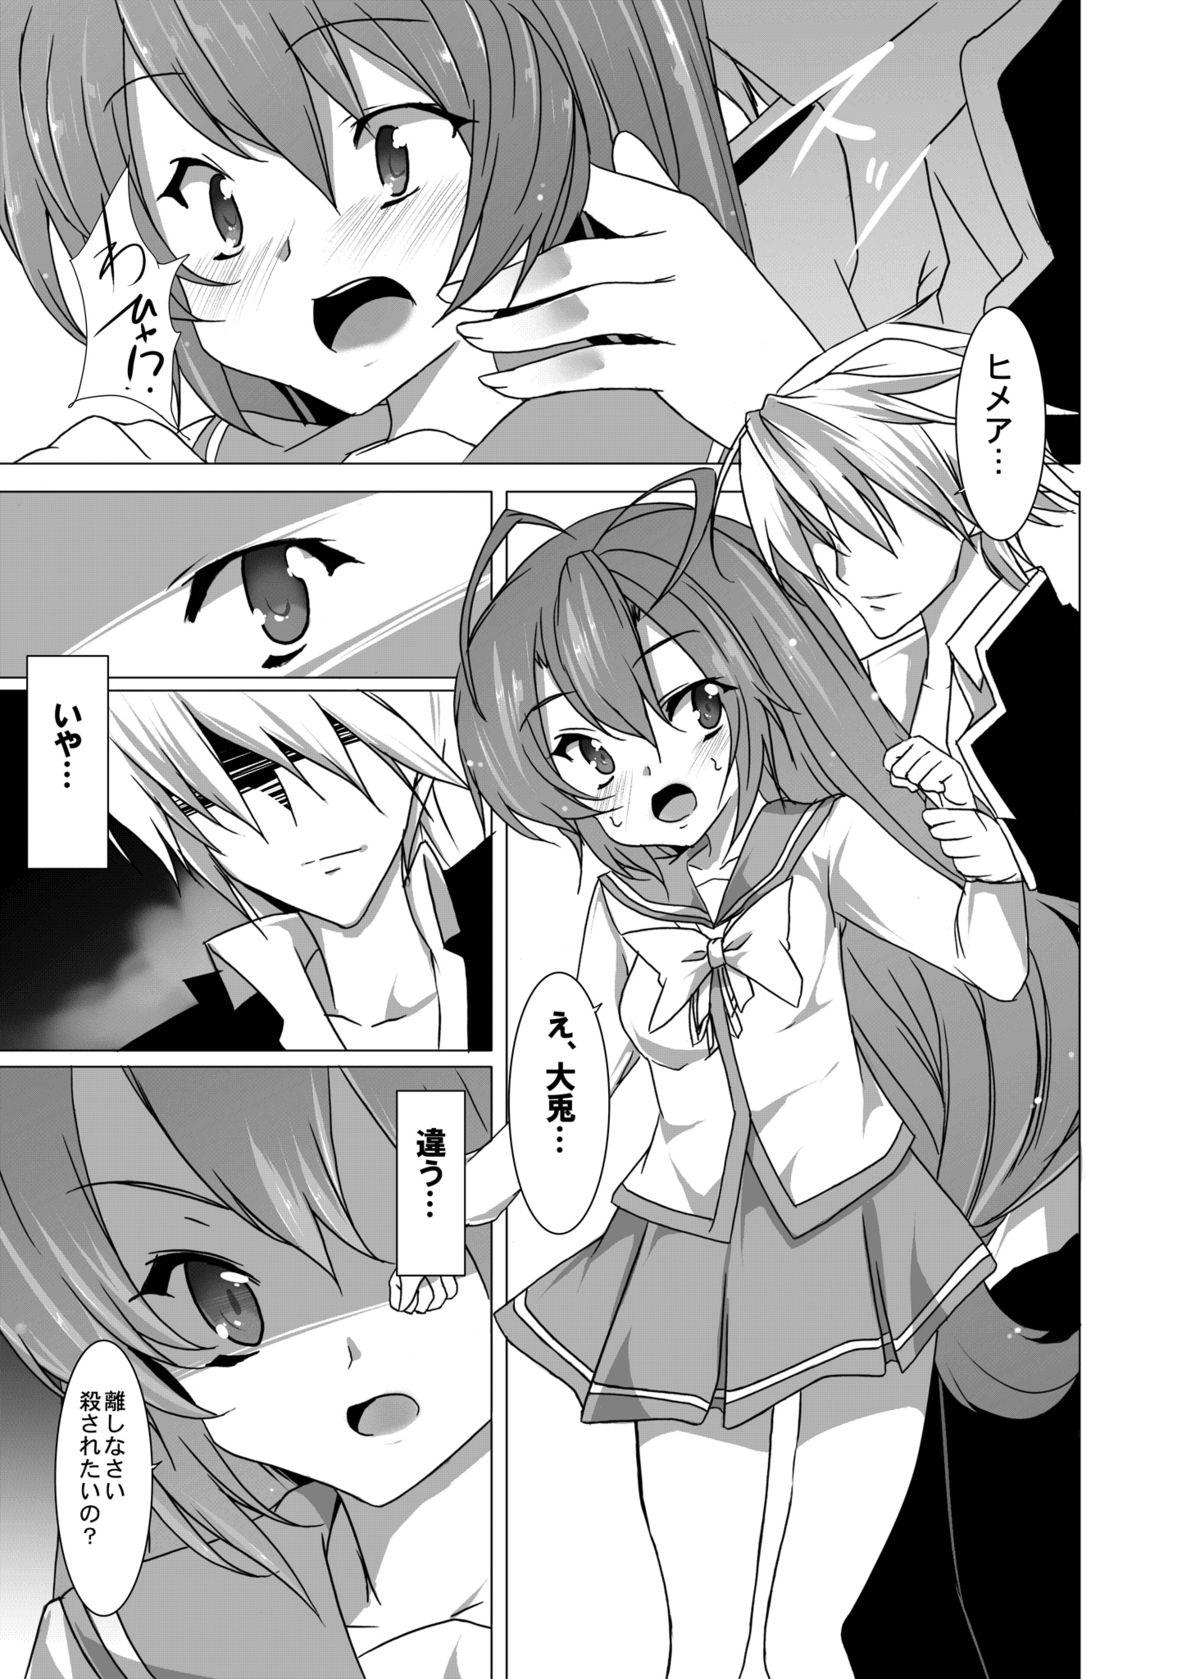 Petite Yumeiro Communication - Itsuka tenma no kuro usagi Gets - Page 6